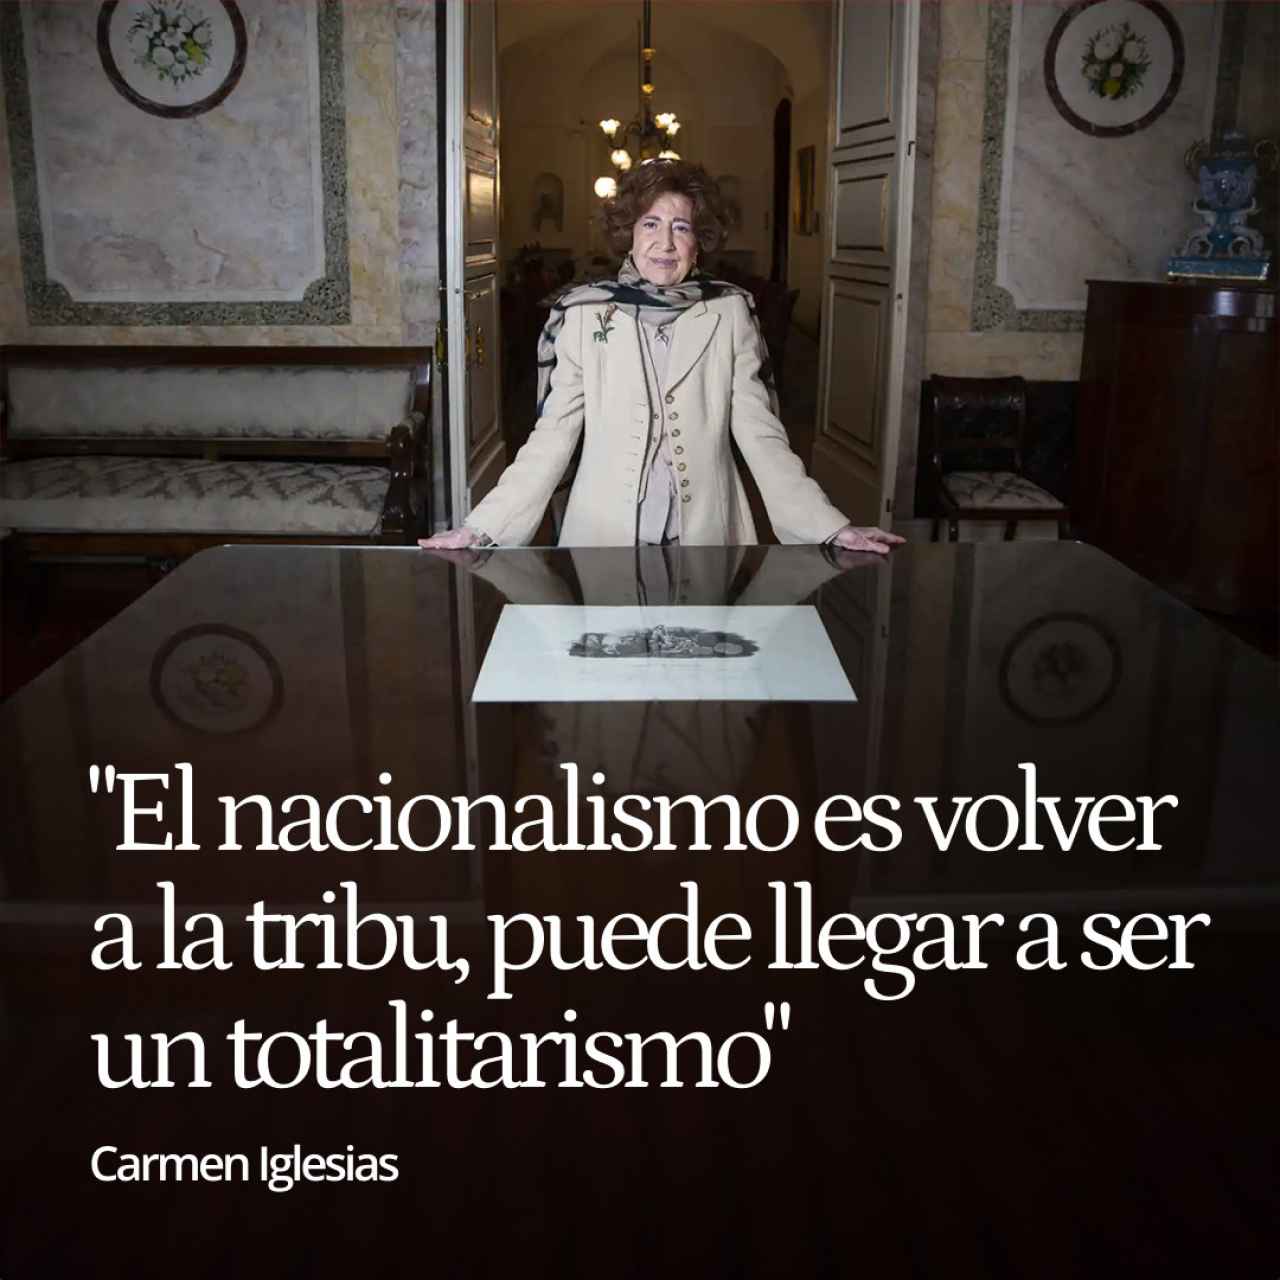 Carmen Iglesias: "El nacionalismo es volver a la tribu, puede llegar a ser un totalitarismo"